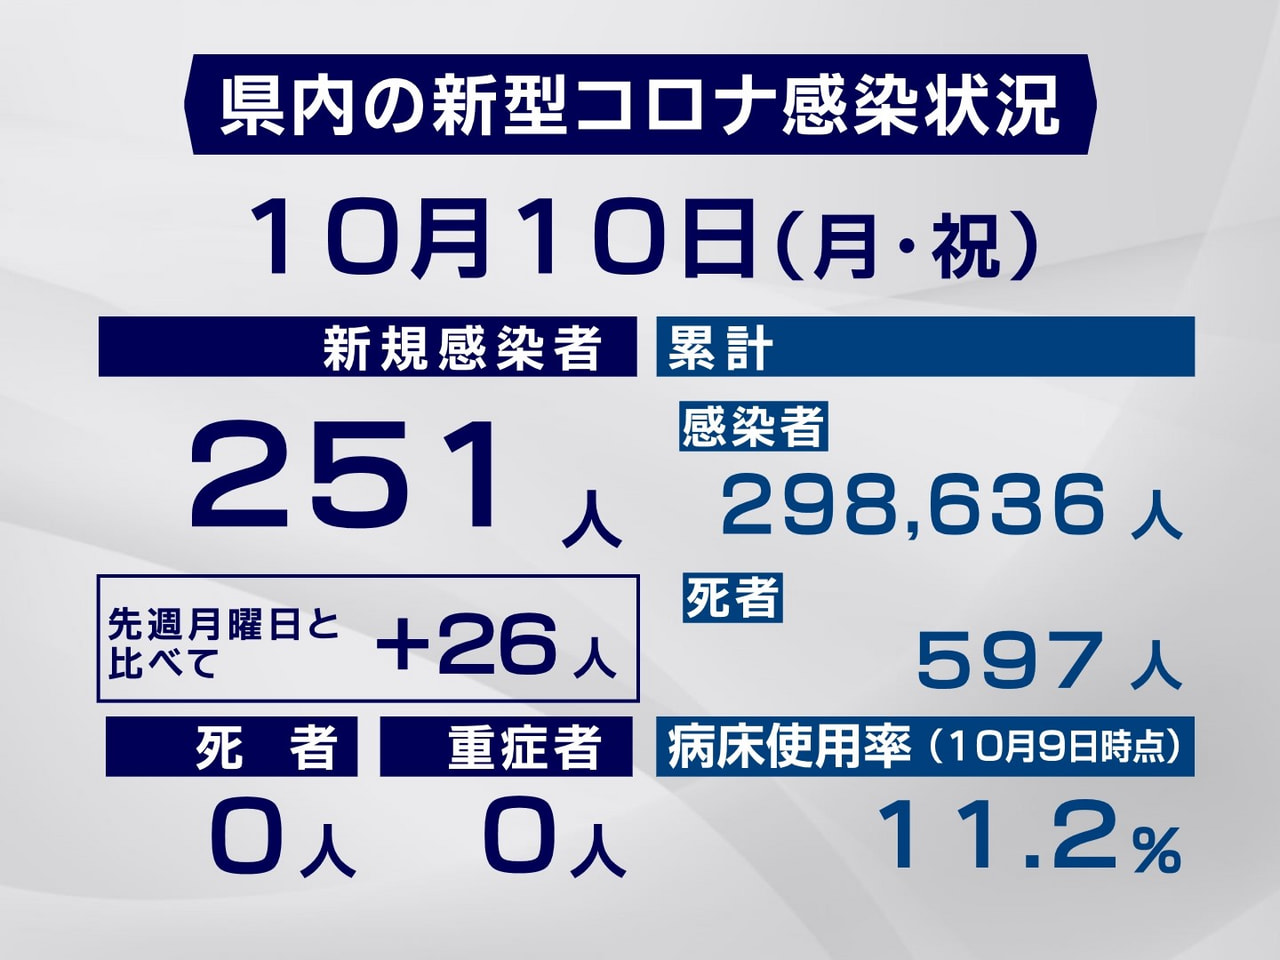 岐阜県は１０日、新型コロナウイルスの感染者が新たに２５１人確認されたと発表しまし...